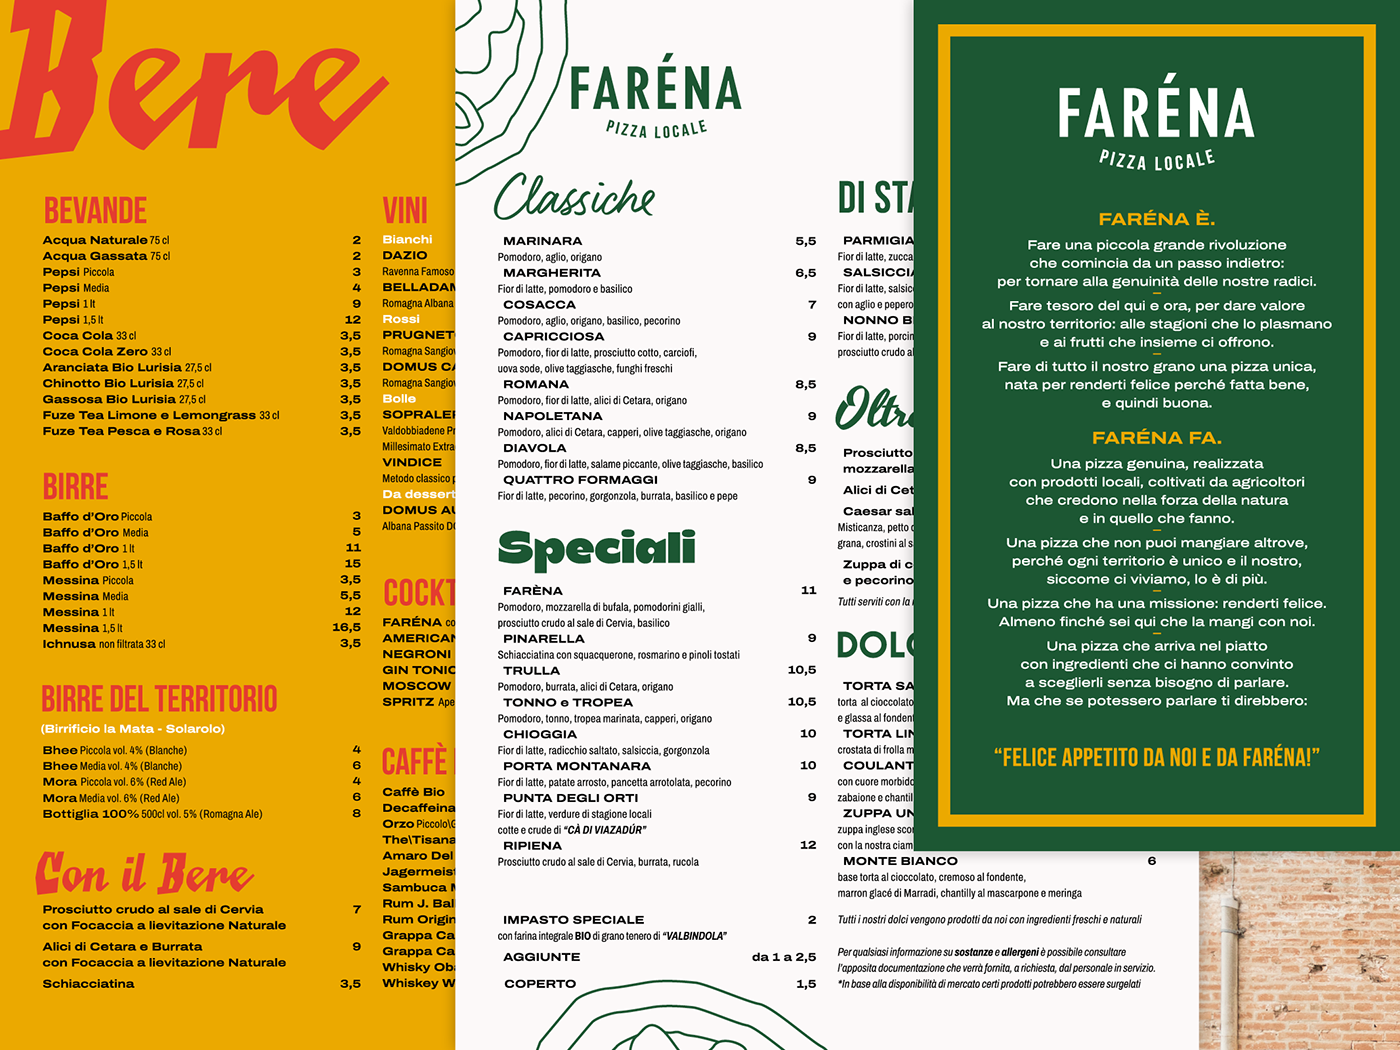 brand brand identity branding  Food  identity Italy Pizza restaurant